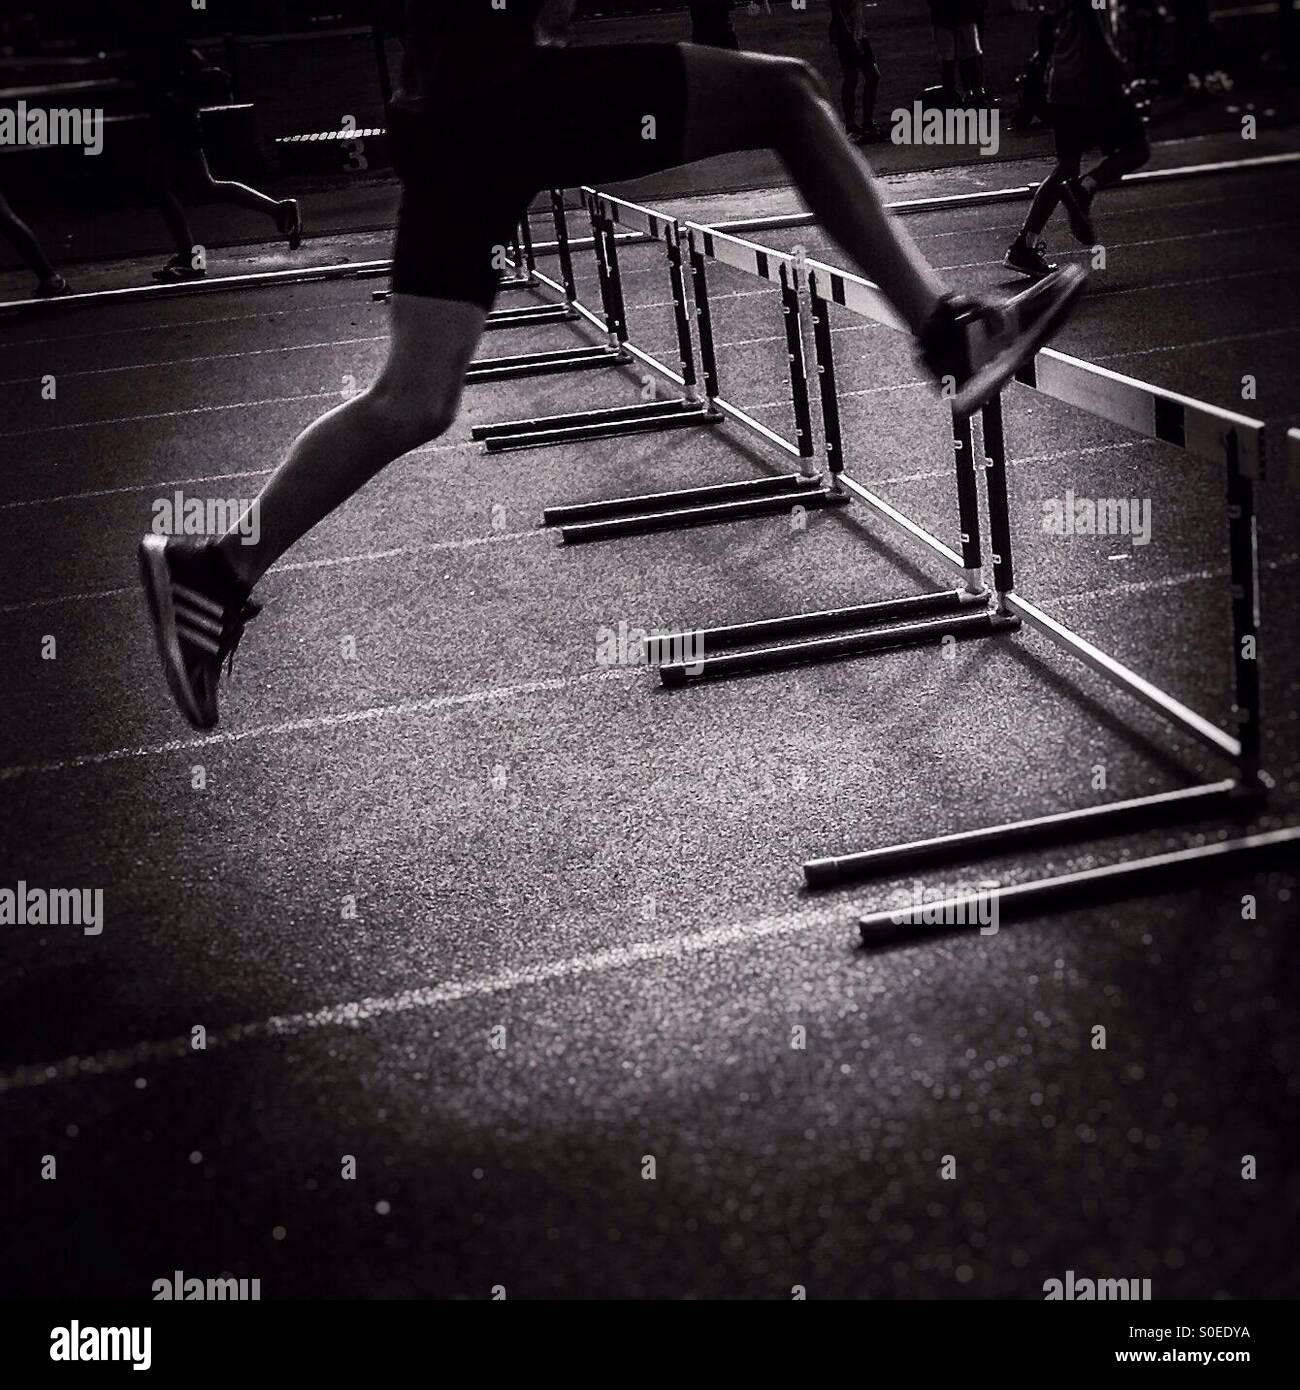 Athlete jumping hurdles Stock Photo